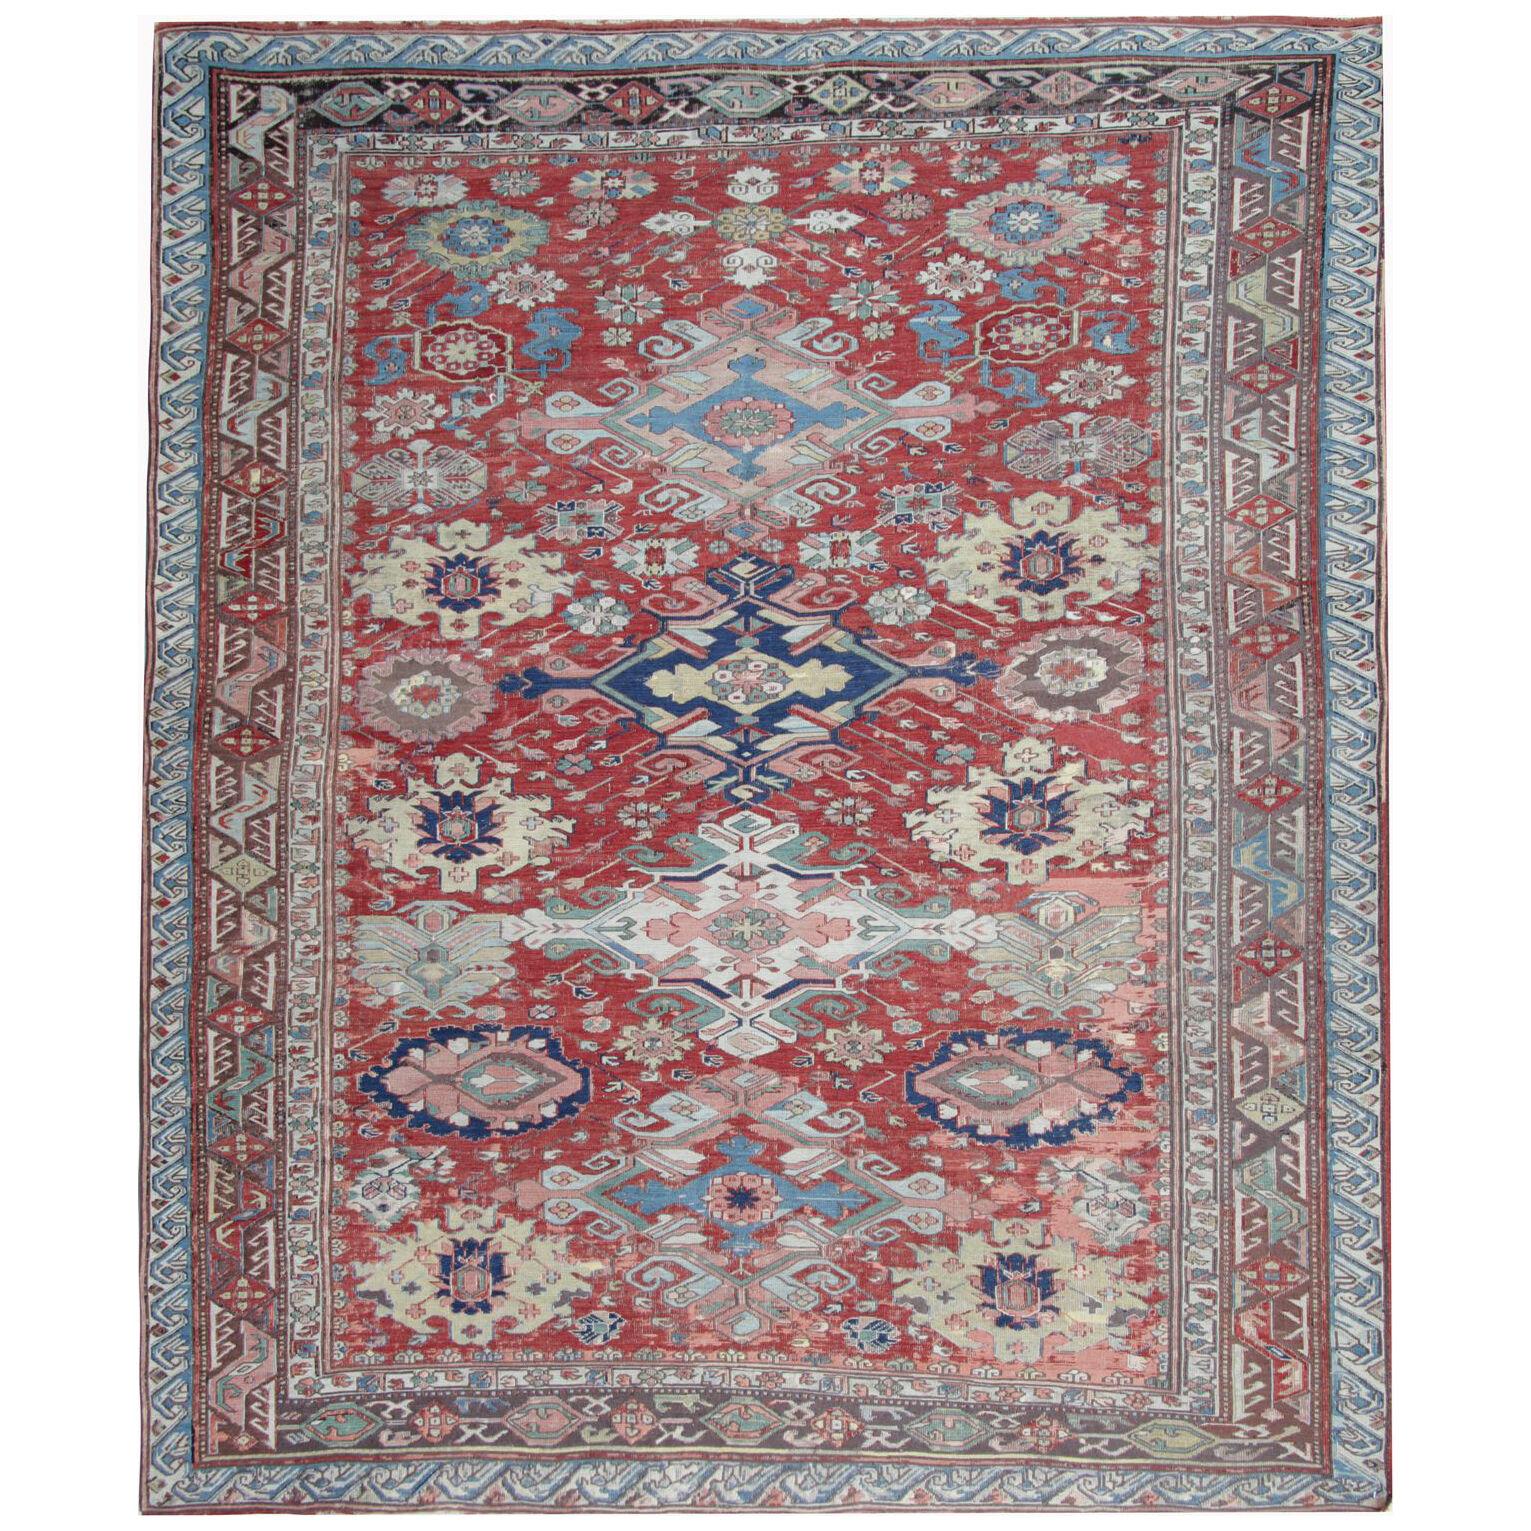 Antique Caucasian Soumak Rug Flat Woven Handmade Wool Carpet- 168x197cm 